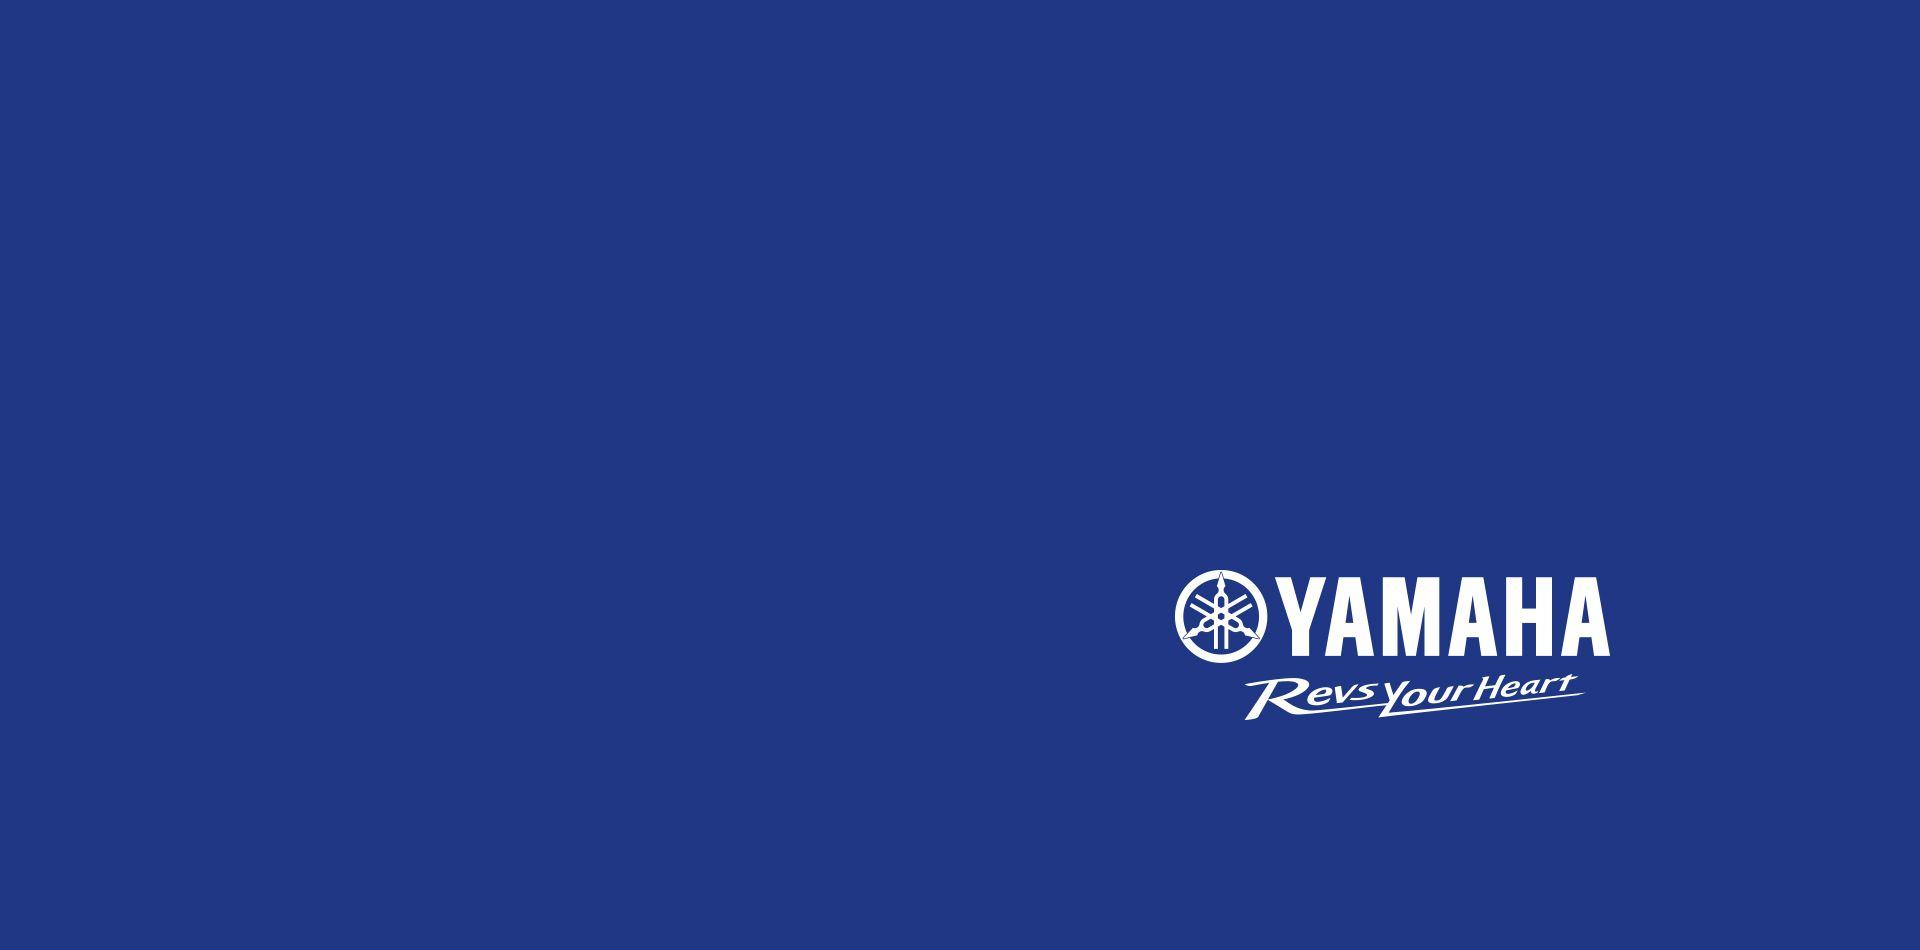 Yamaha Racing Logo - Yamaha Motor Co., Ltd. Announces YAMAHA FACTORY RACING TEAM Rider